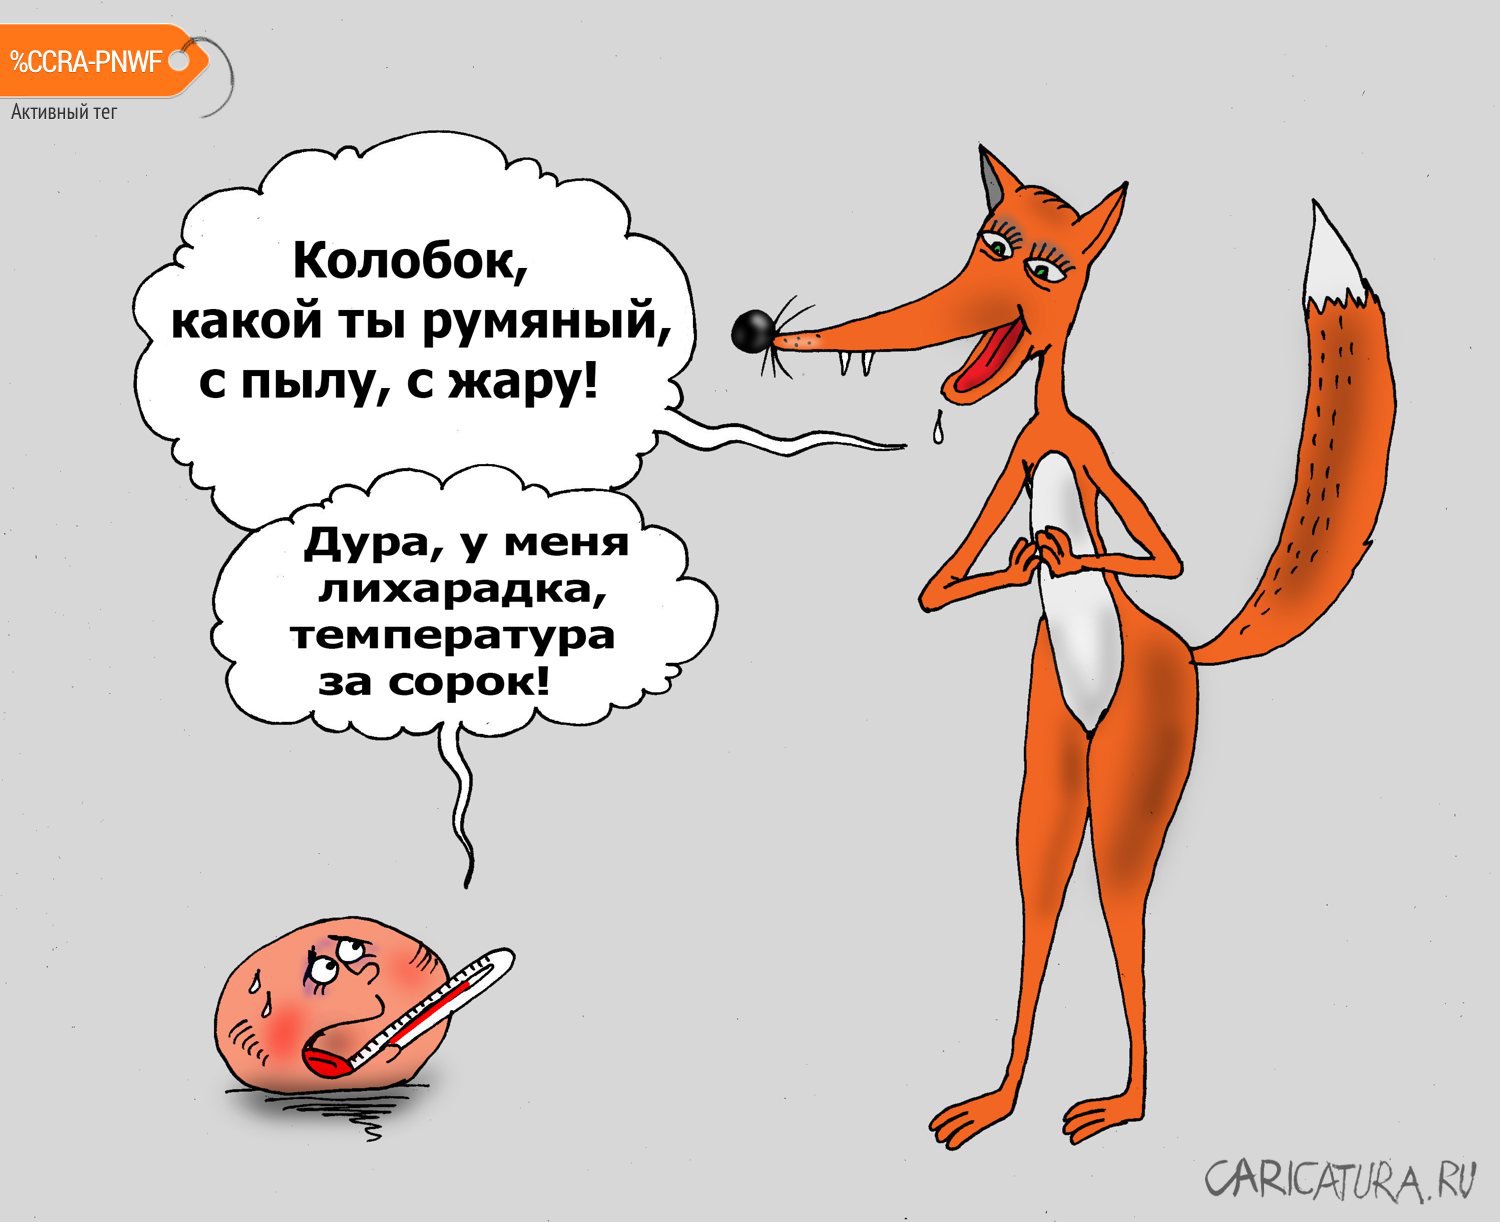 Карикатура "Карантин", Валерий Тарасенко